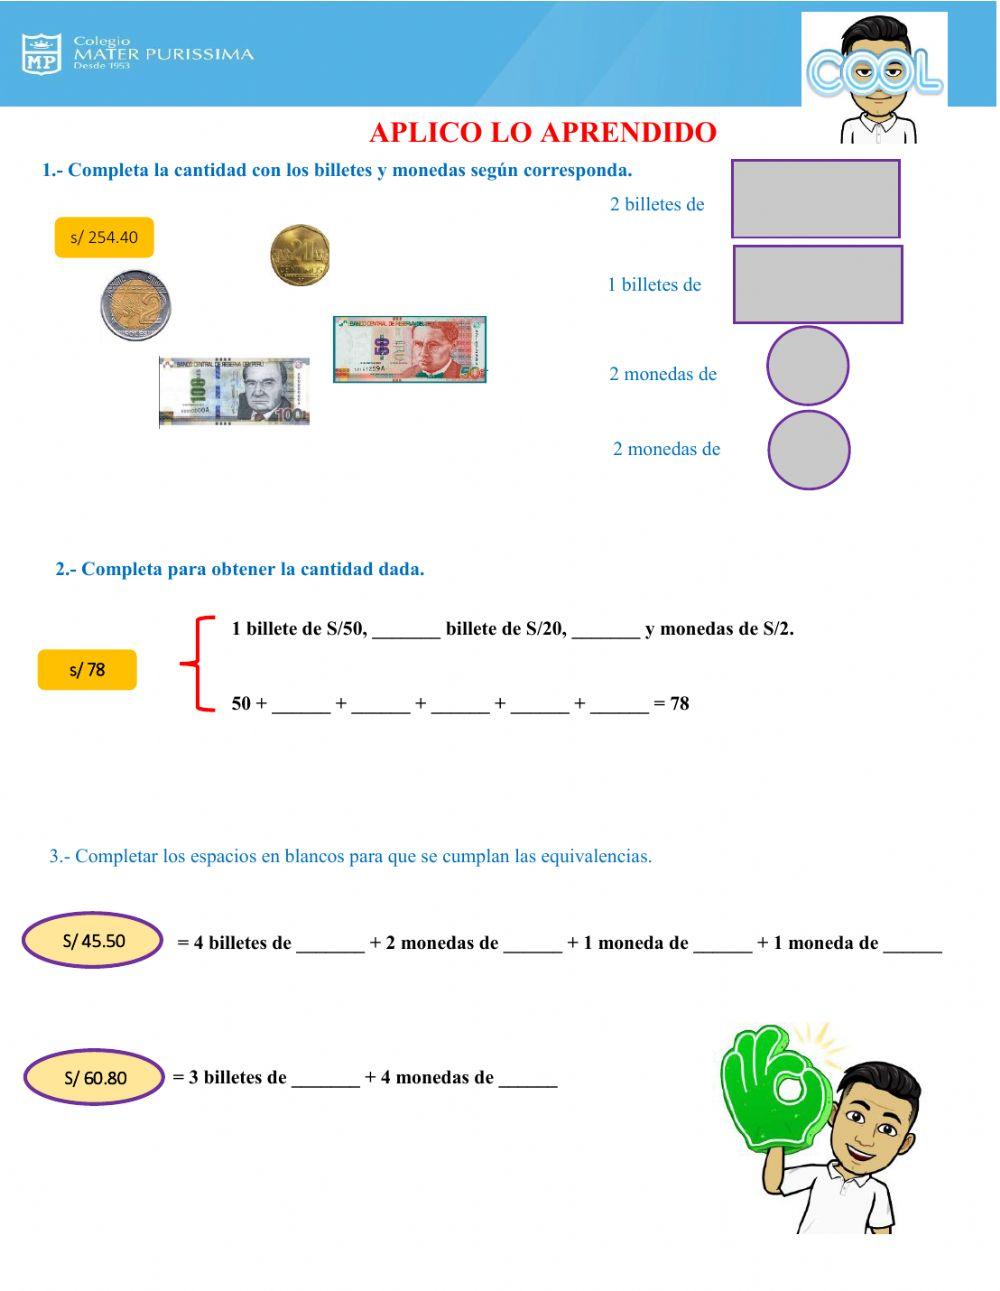 Equivalencia de billetes y monedas